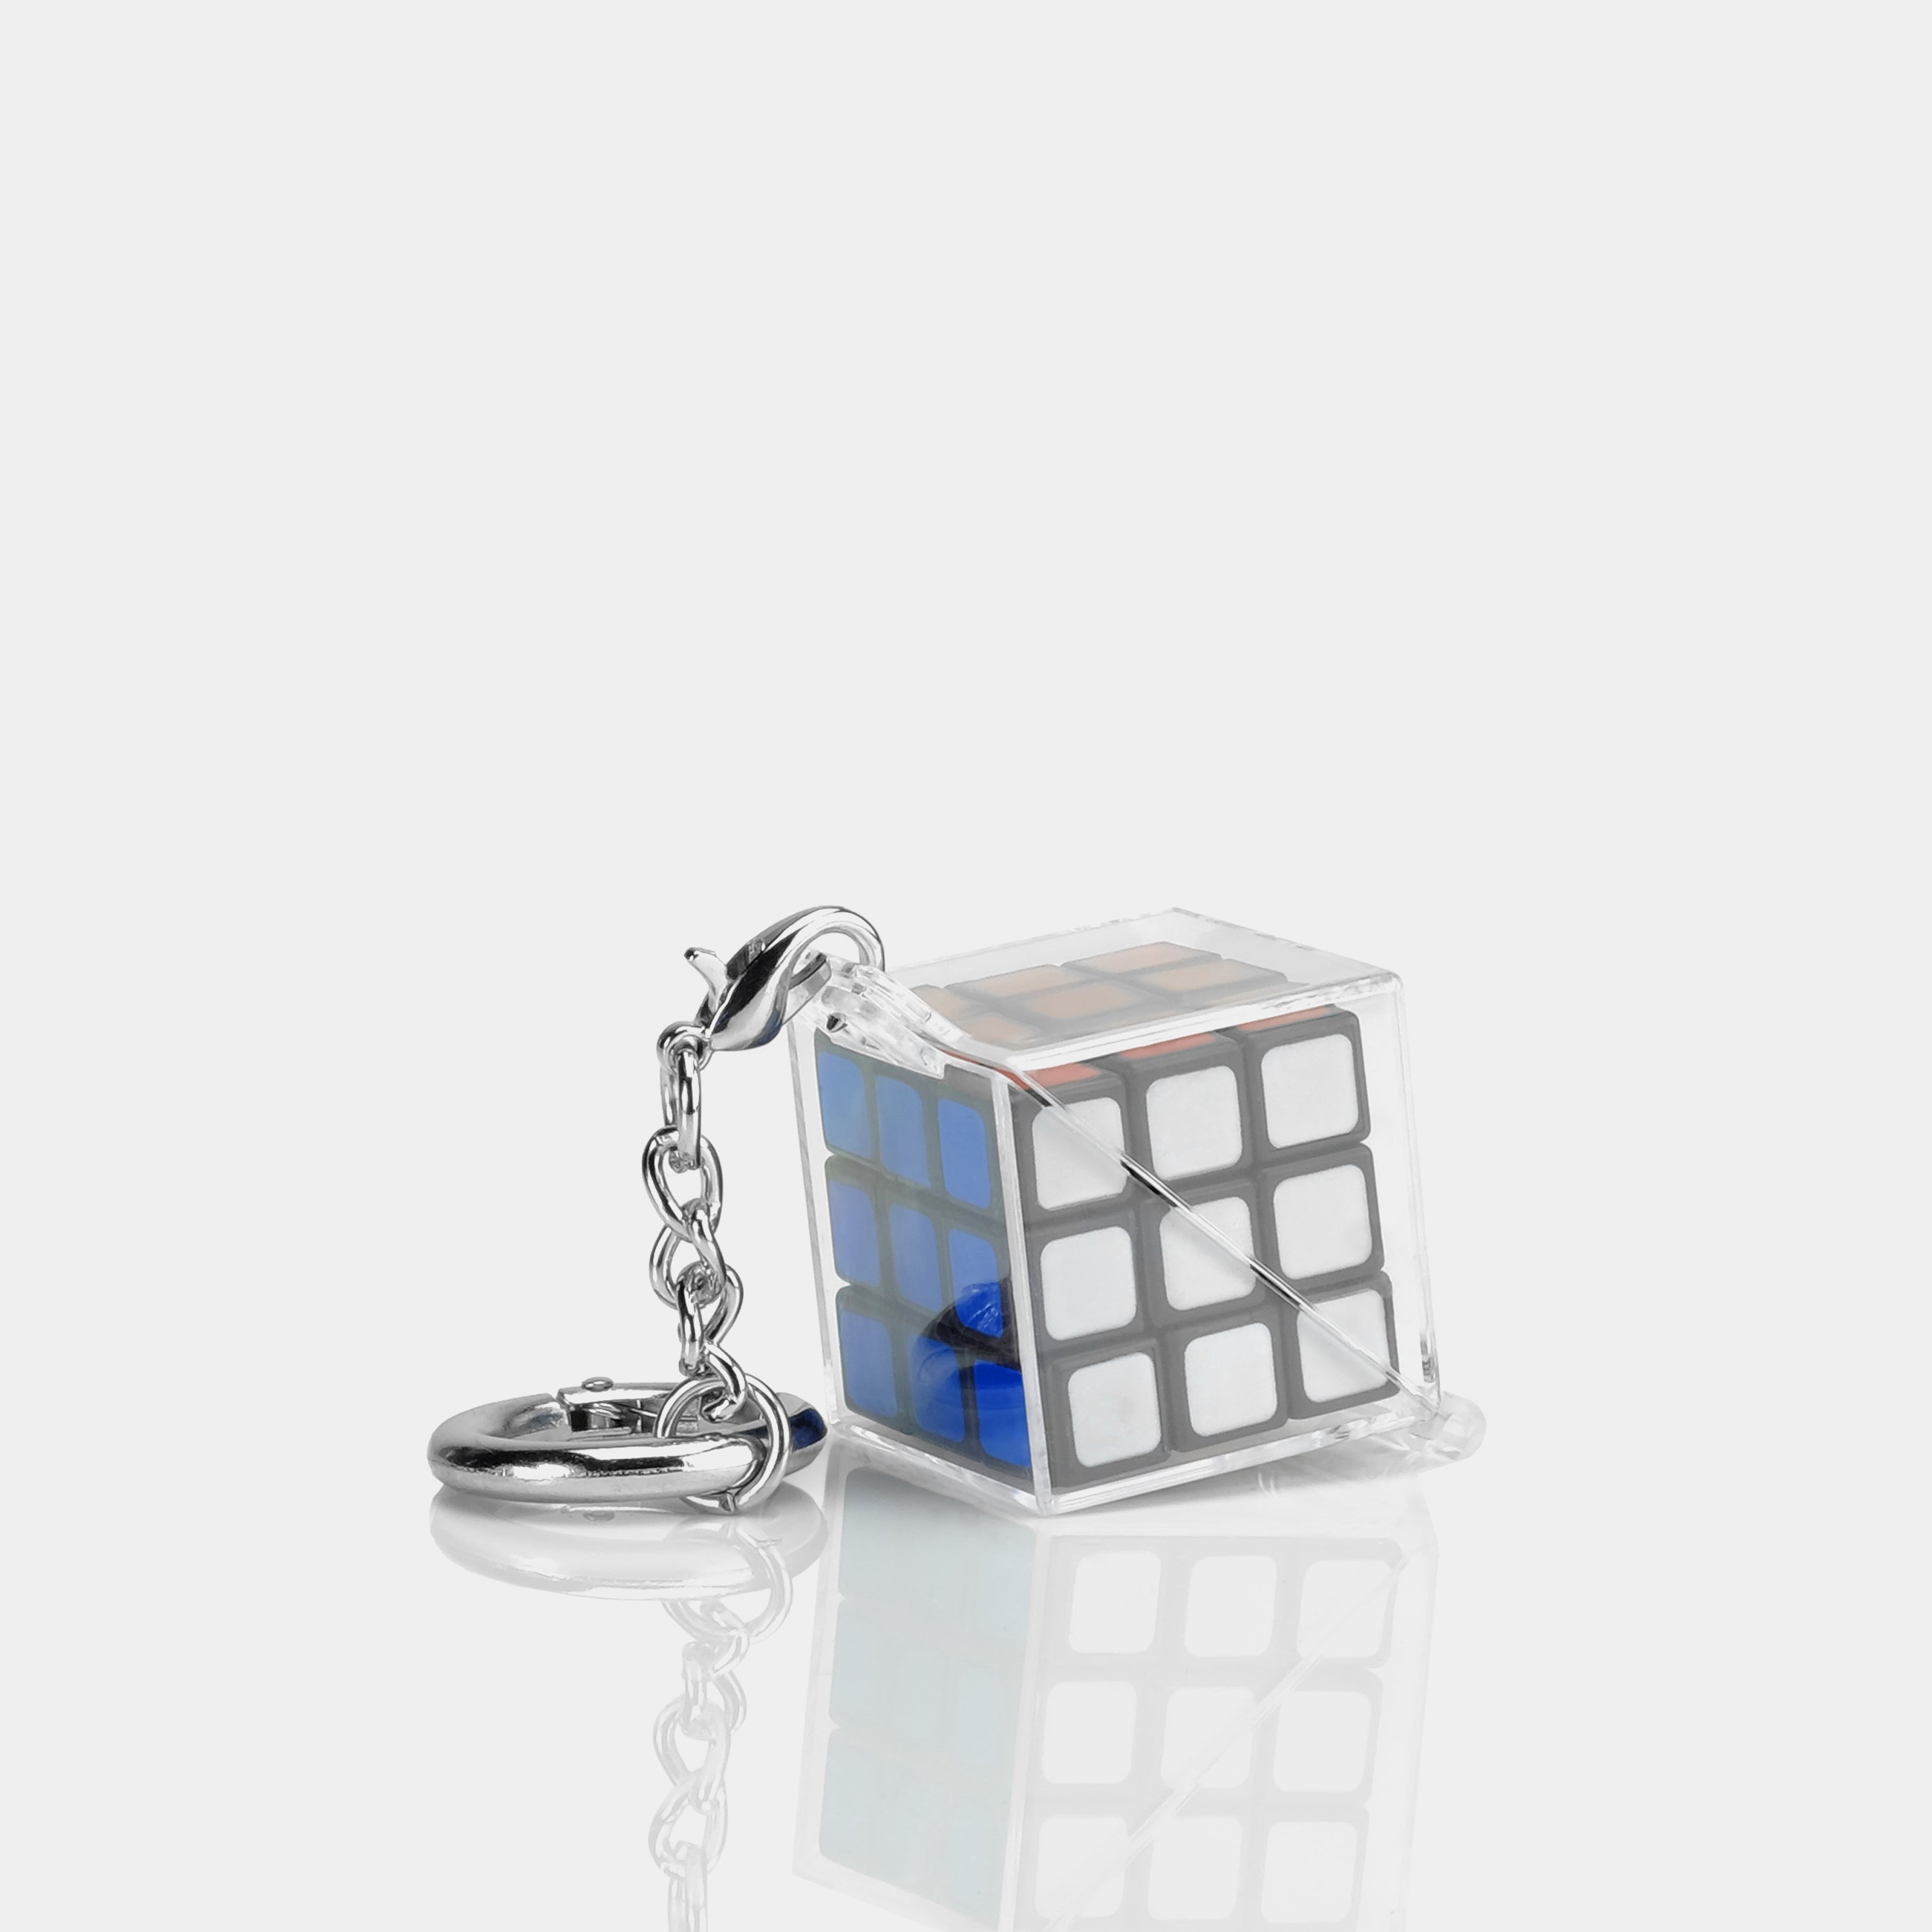 World's Coolest Rubik’s Keychain